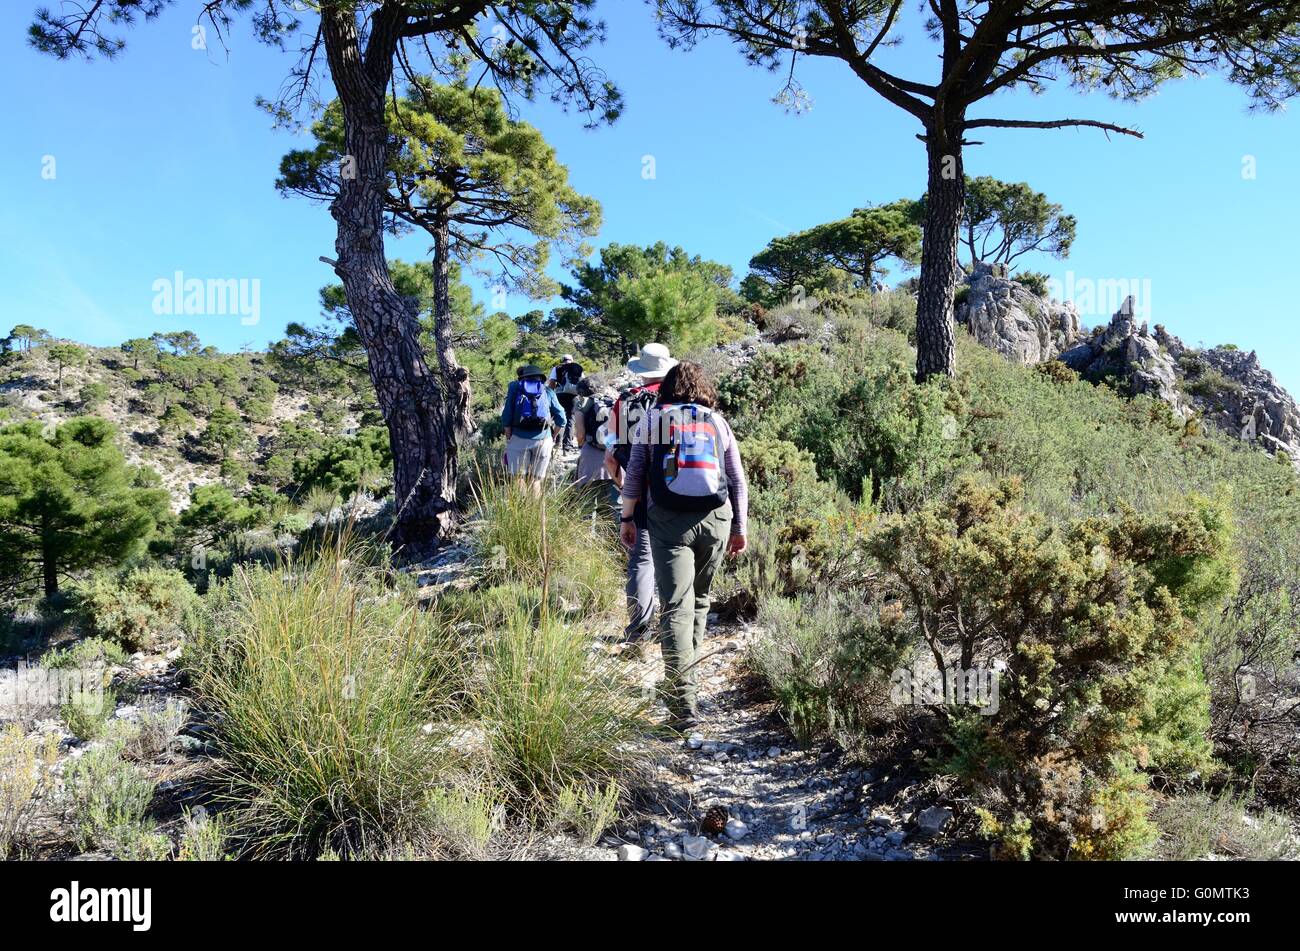 Wanderer auf der alten Seidenstraße durch Kalkstein Landschaften Sierra Tejeda spanischen Nationalpark Malaga Andalusien Spanien Stockfoto